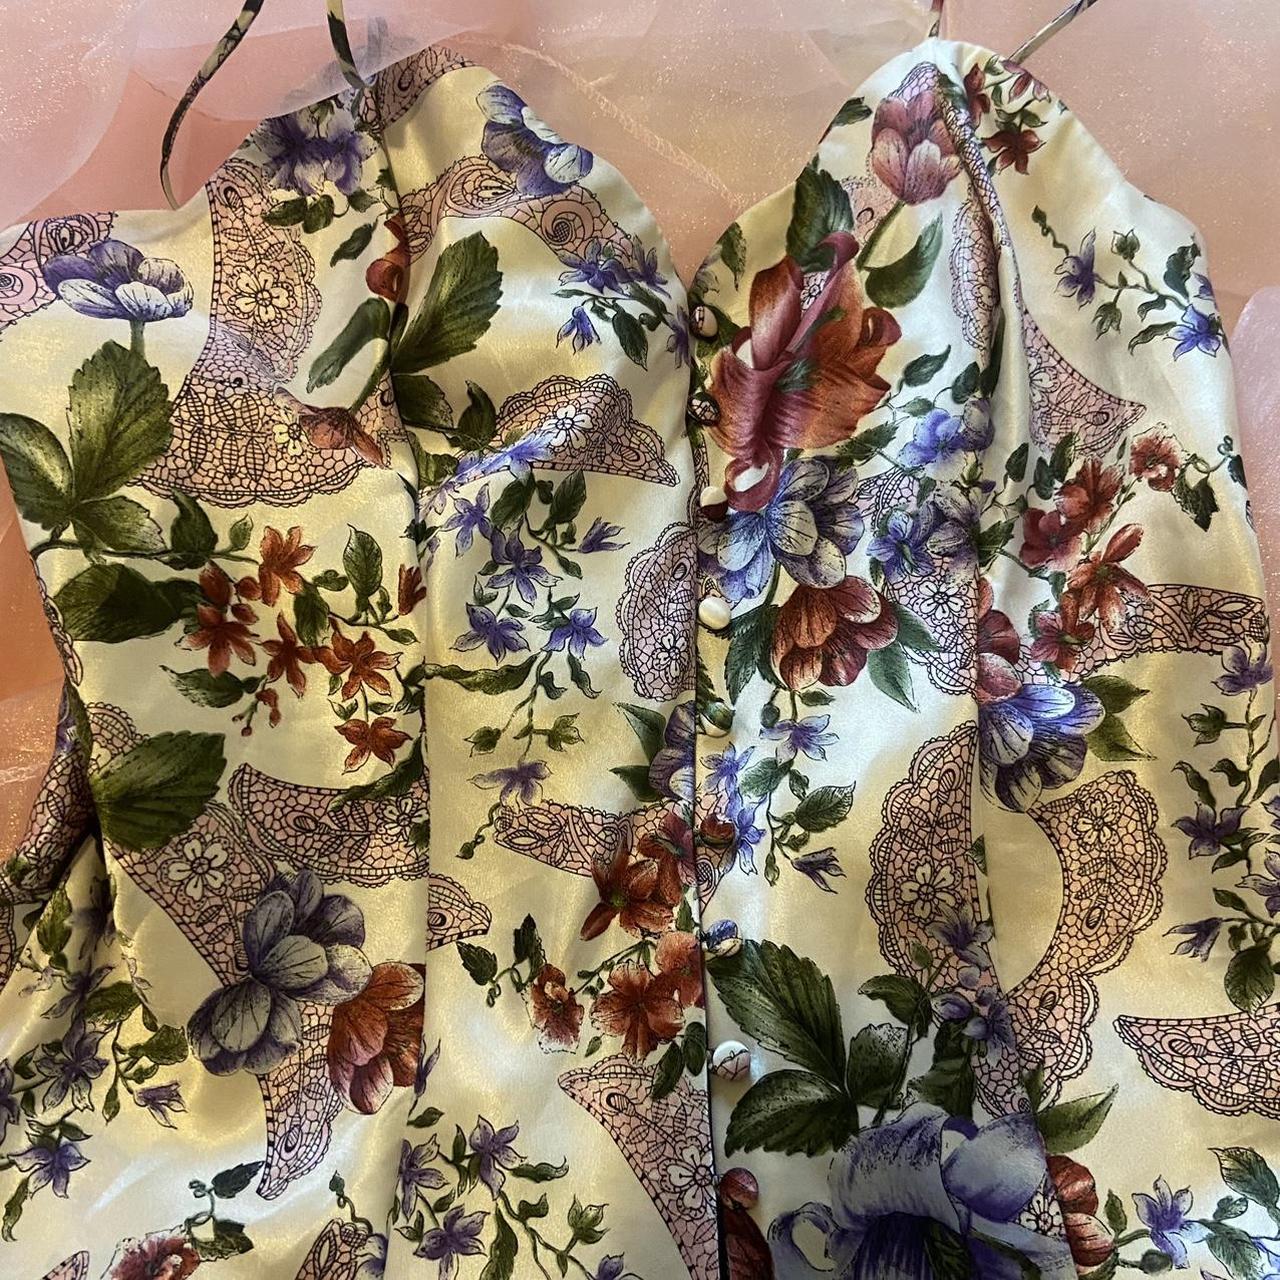 Vintage Victorias secret silky floral slip dress... - Depop